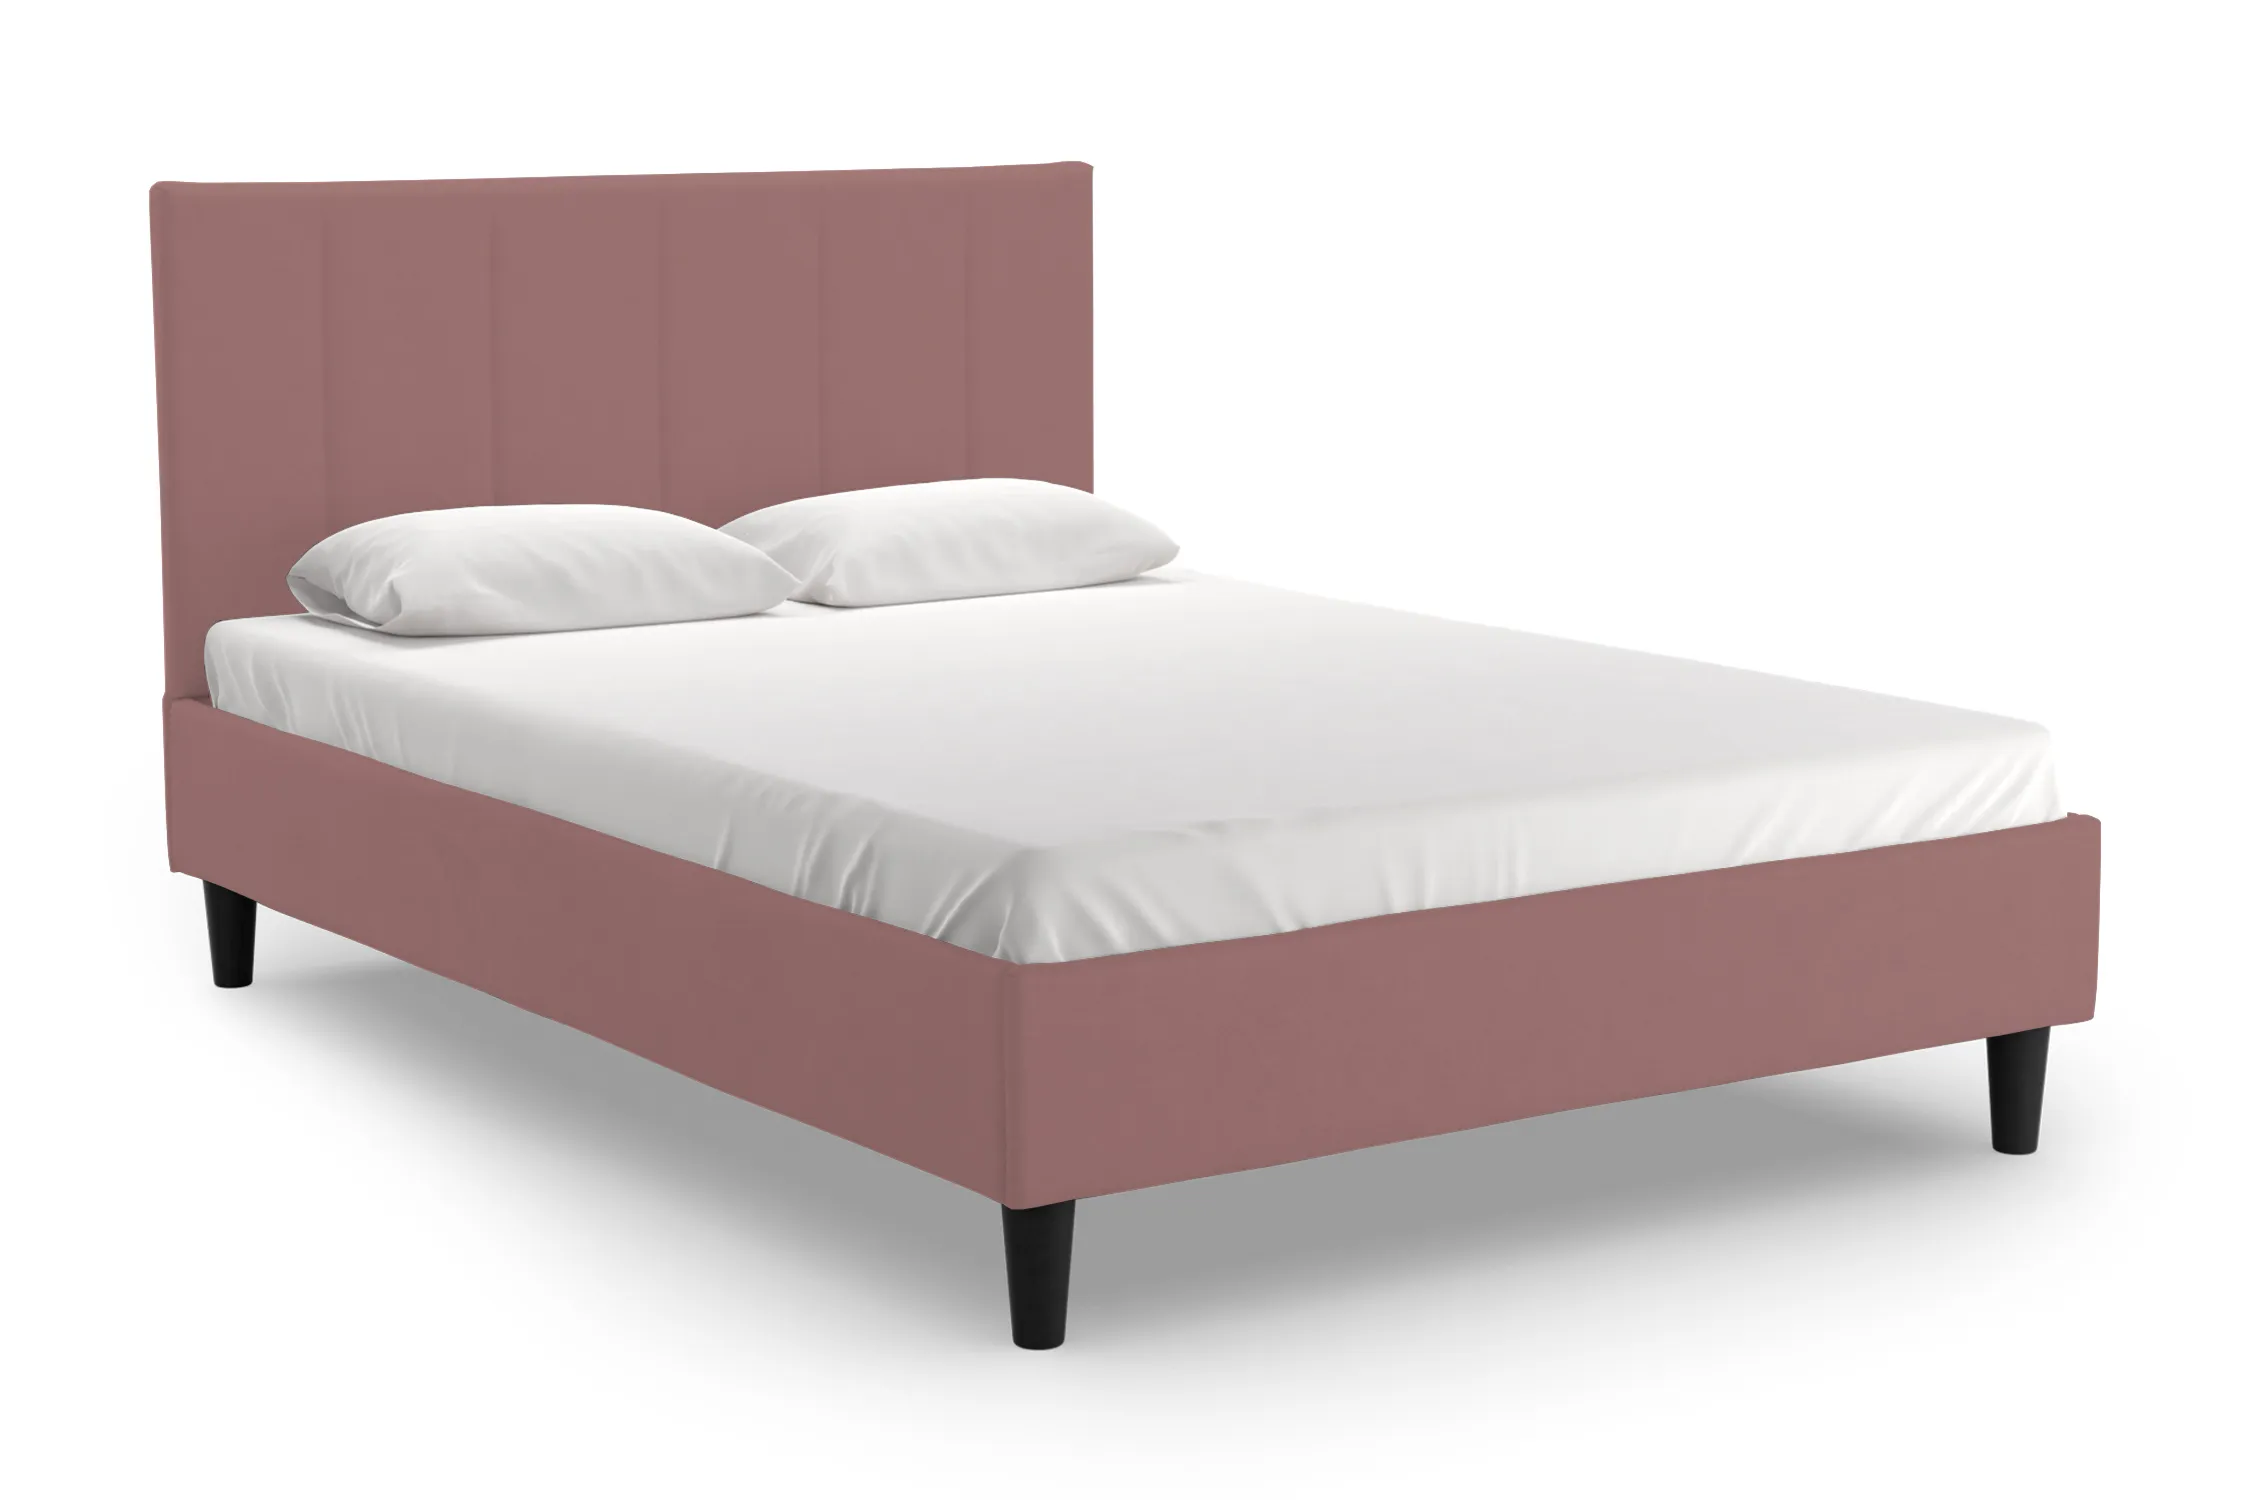 Кровать Дара розовая